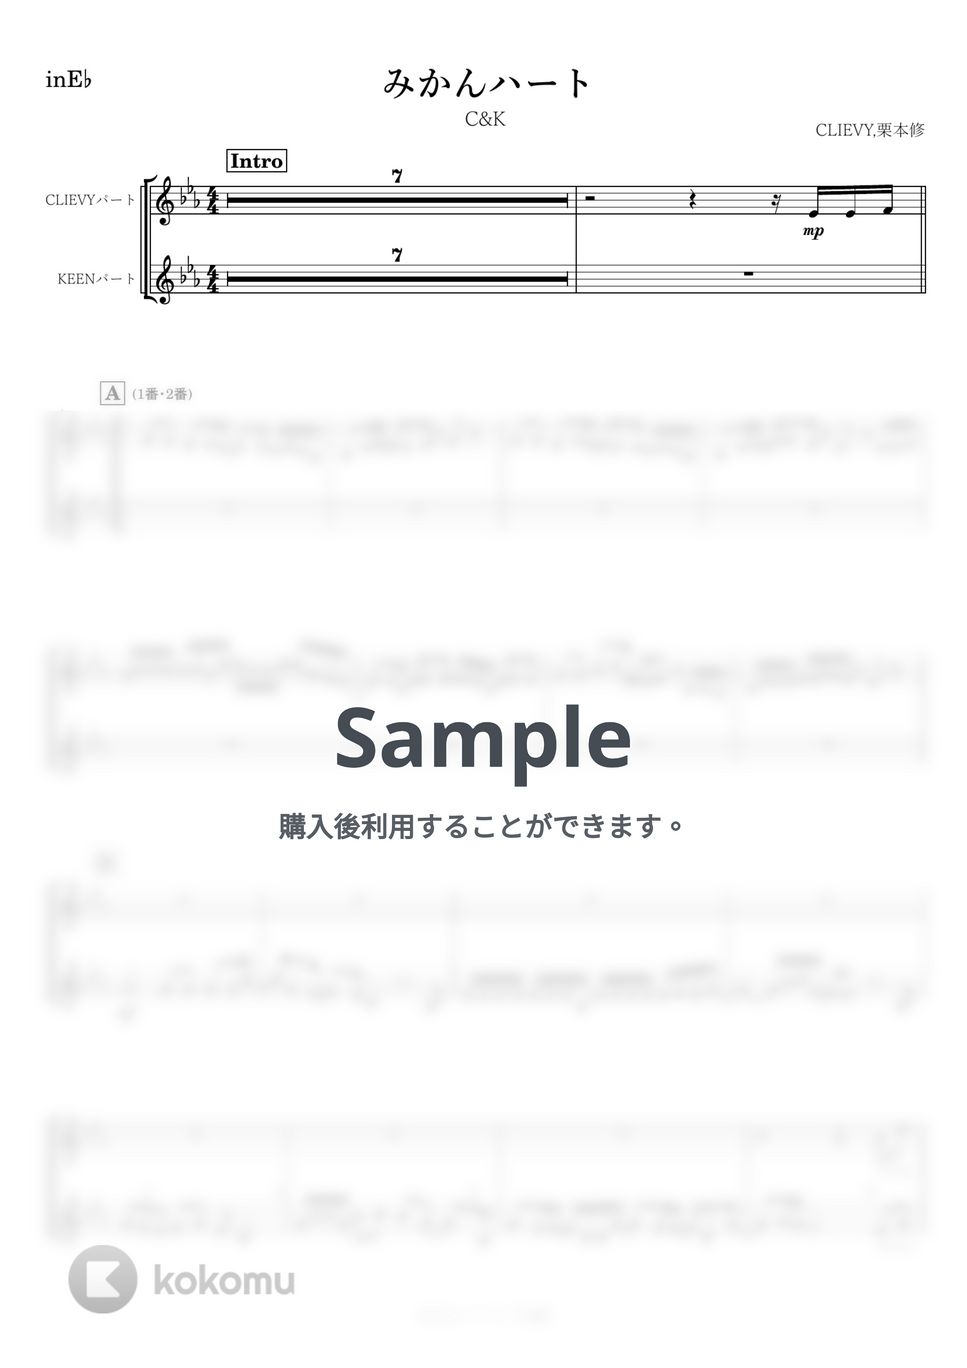 C&K - みかんハート (E♭) by kanamusic